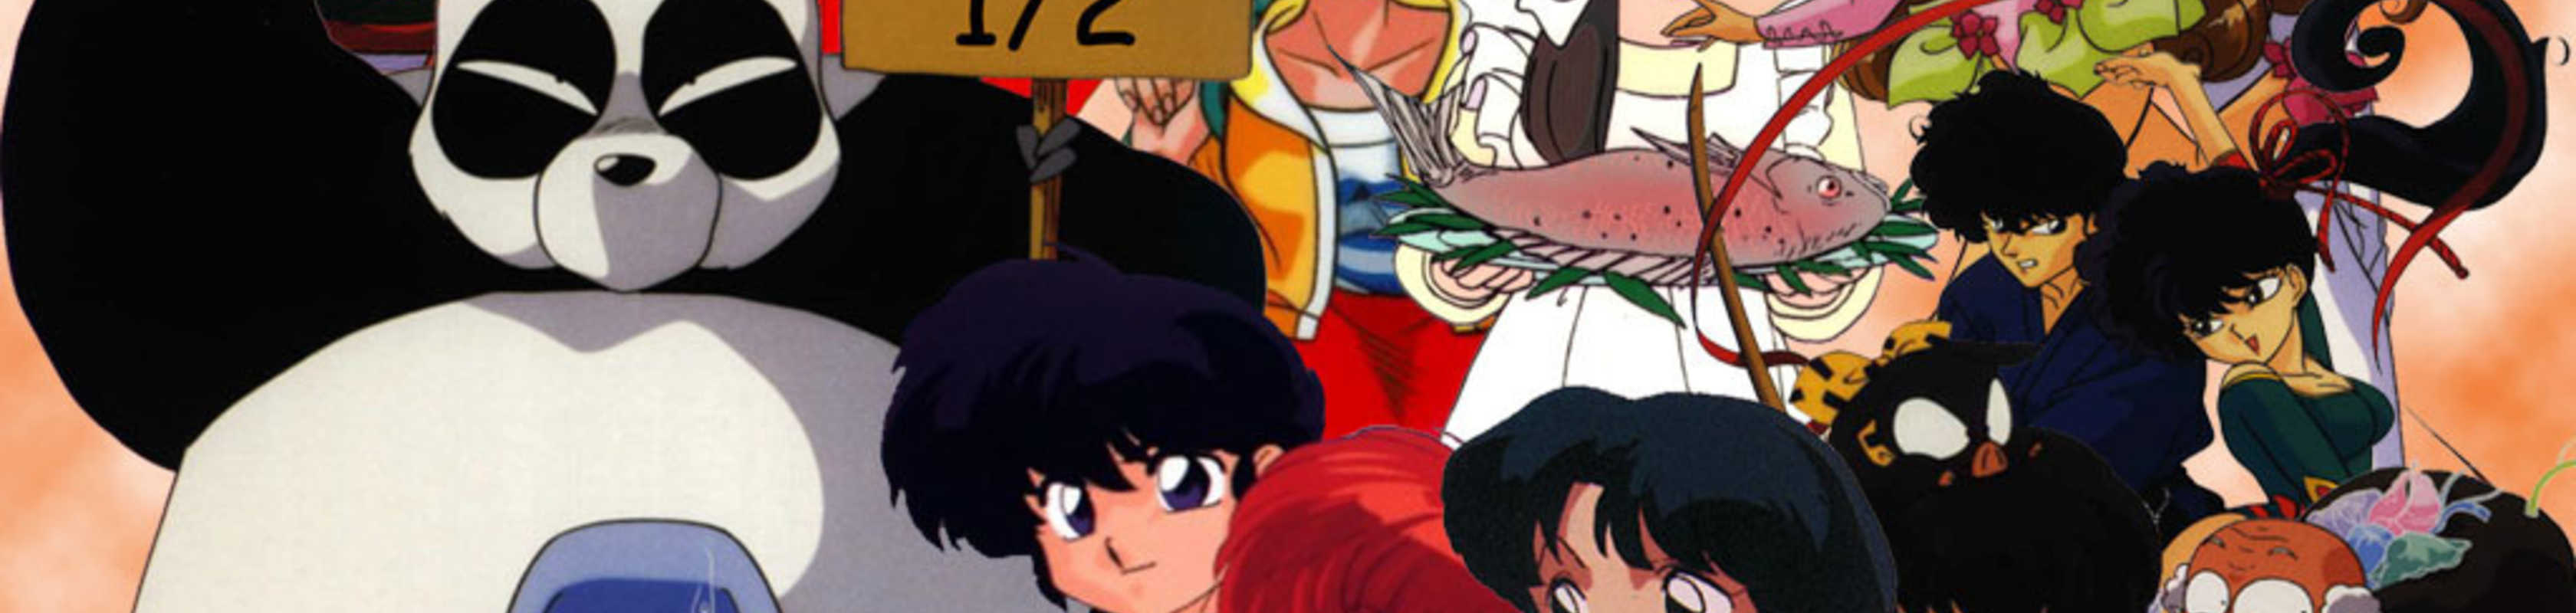 Ranma ½ OVA cover